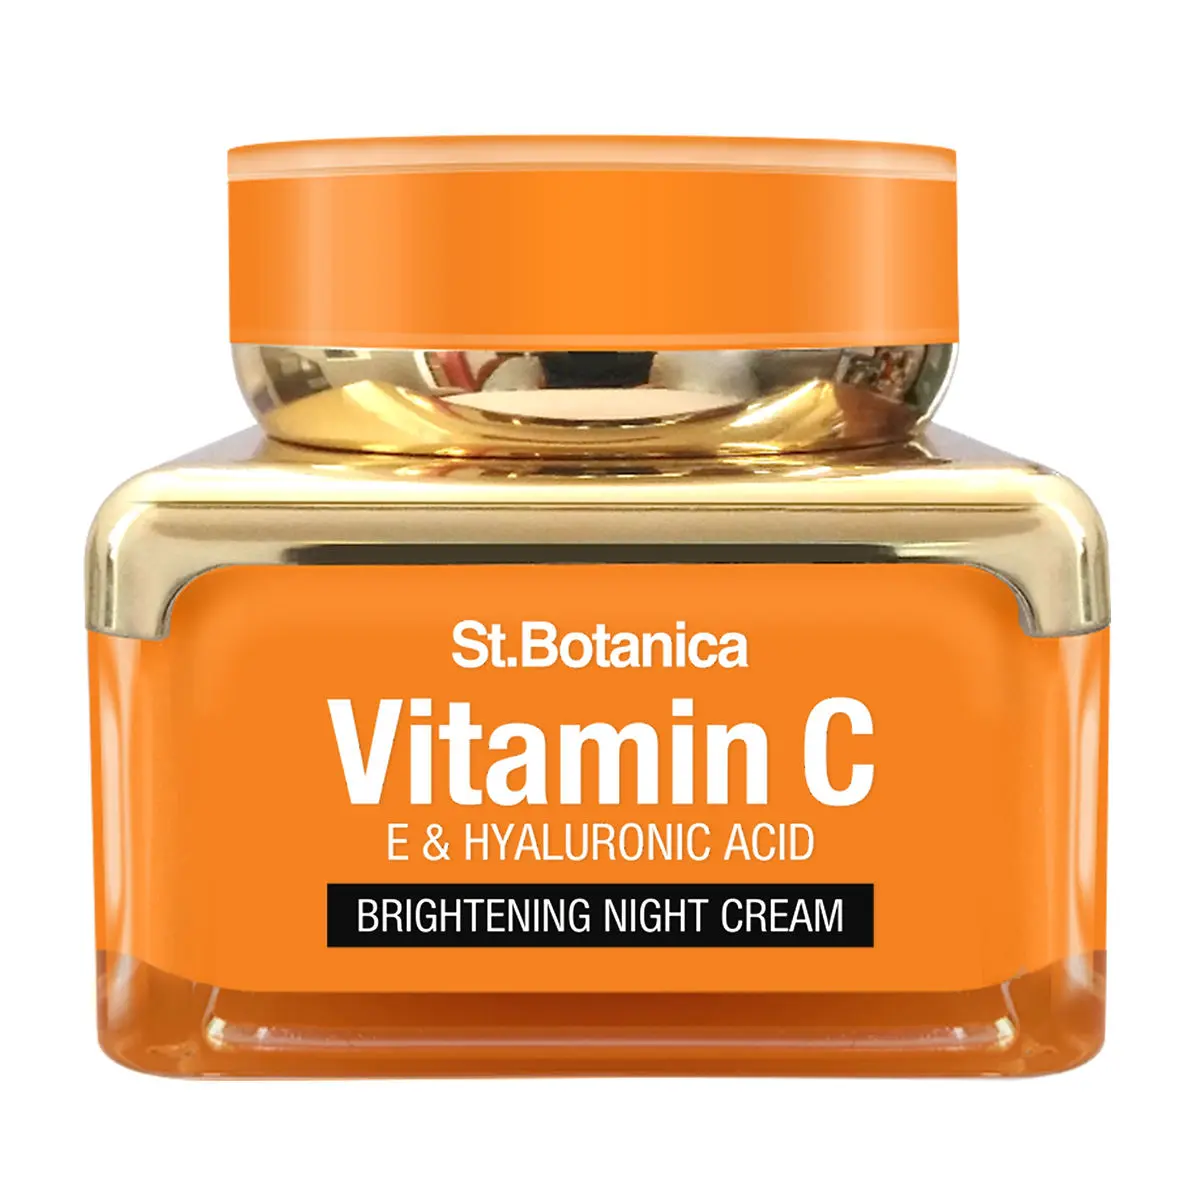 St.Botanica Vitamin C, E & Hyaluronic Acid Brightening Night Cream (50 g)